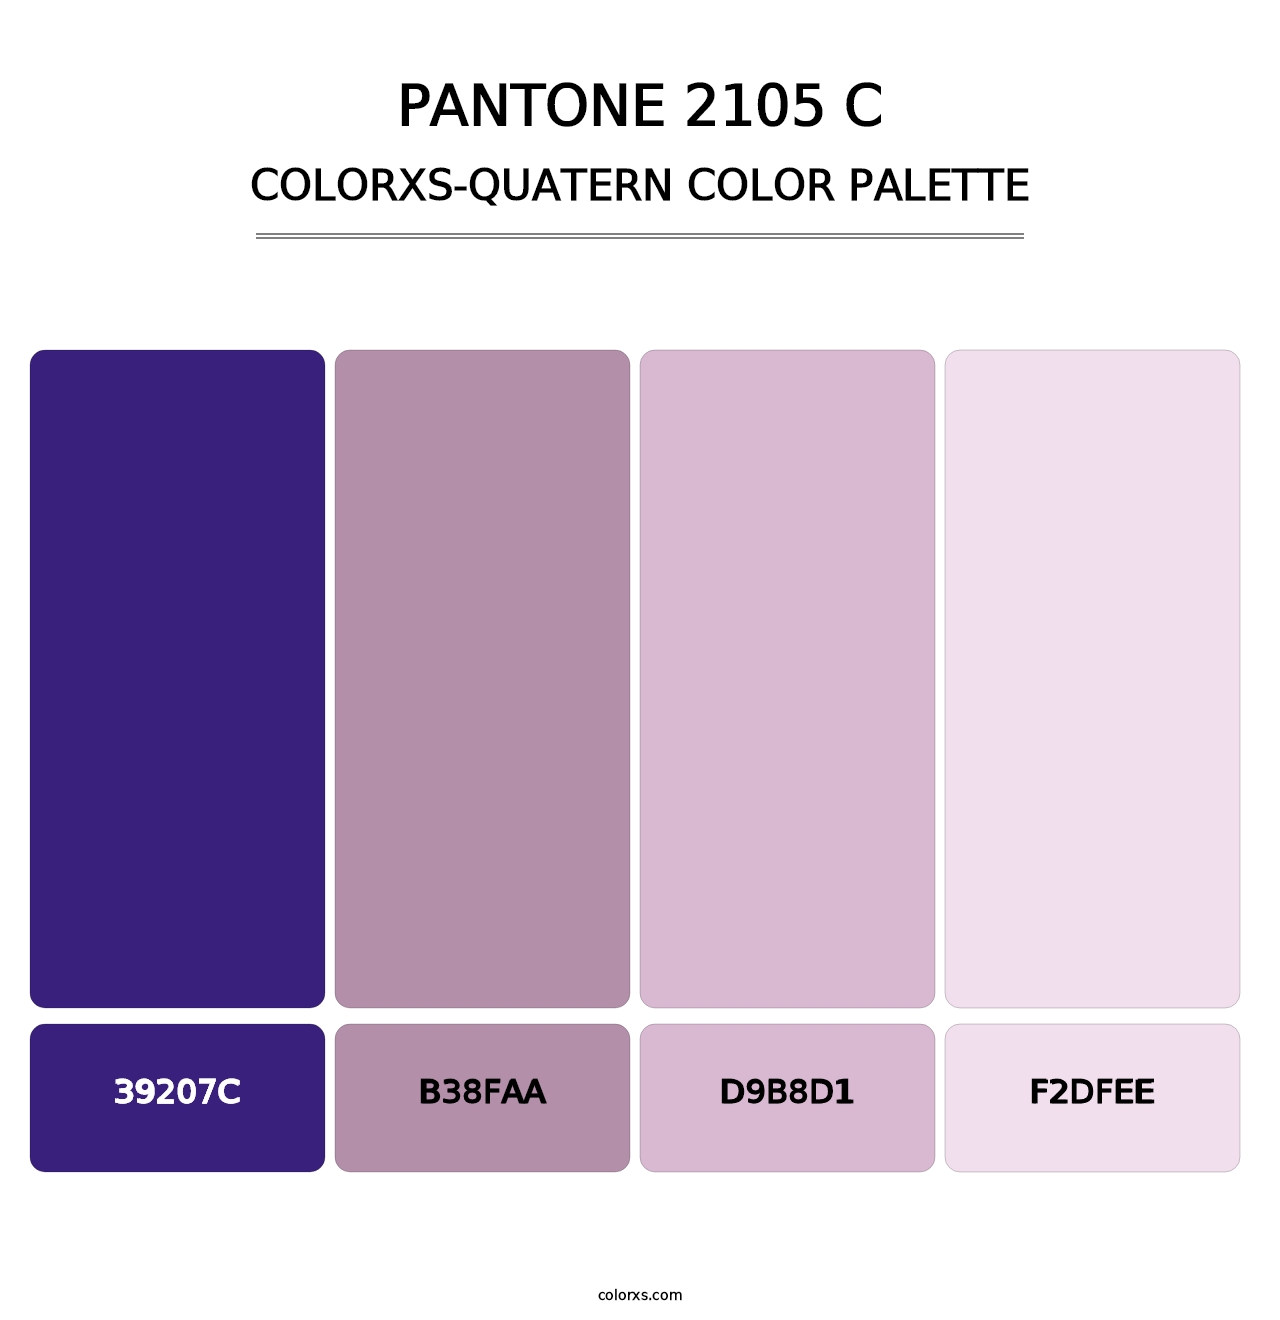 PANTONE 2105 C - Colorxs Quatern Palette